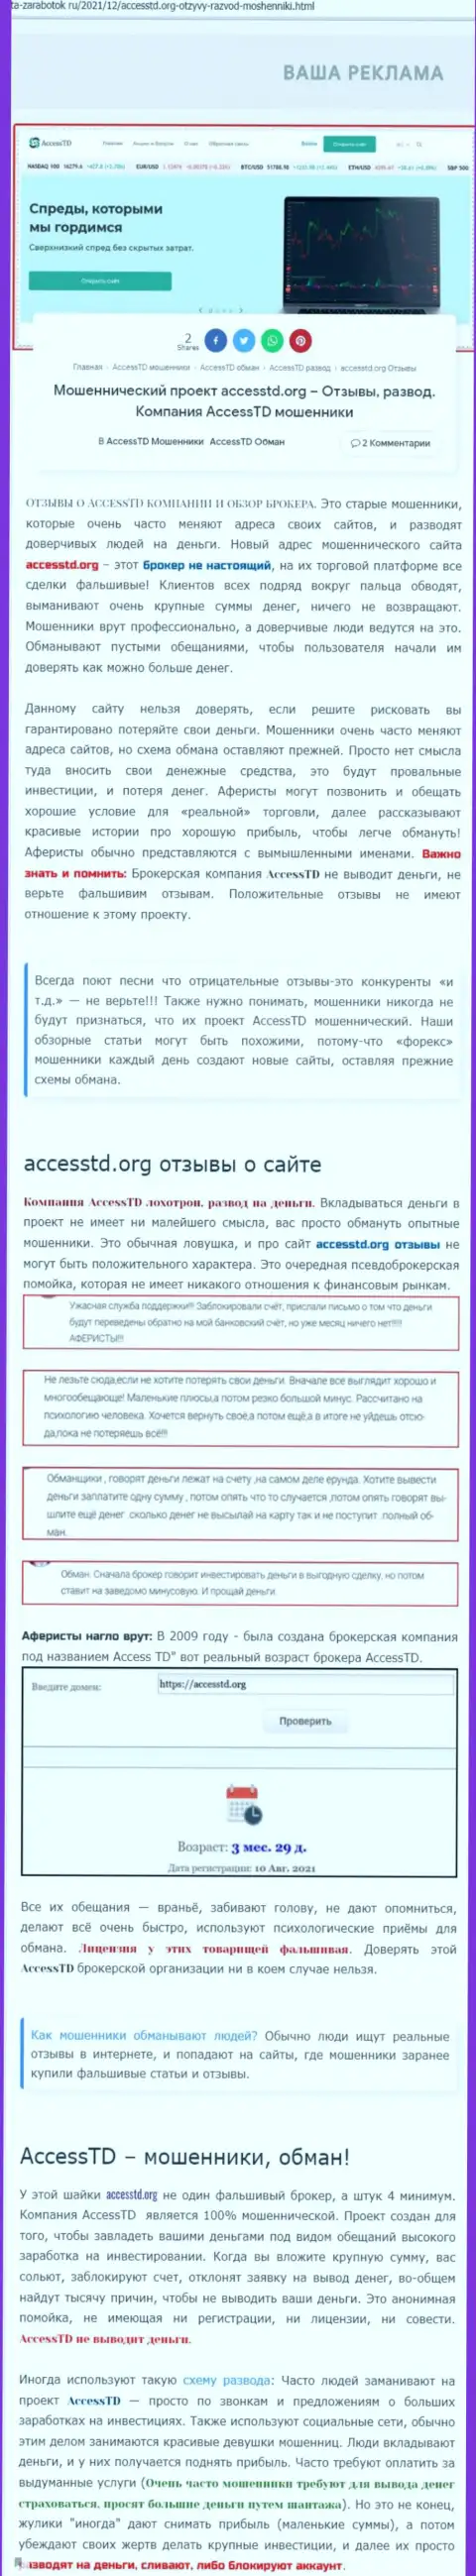 AccessTD Org - это МОШЕННИКИ !!! Обзор неправомерных деяний организации и отзывы пострадавших